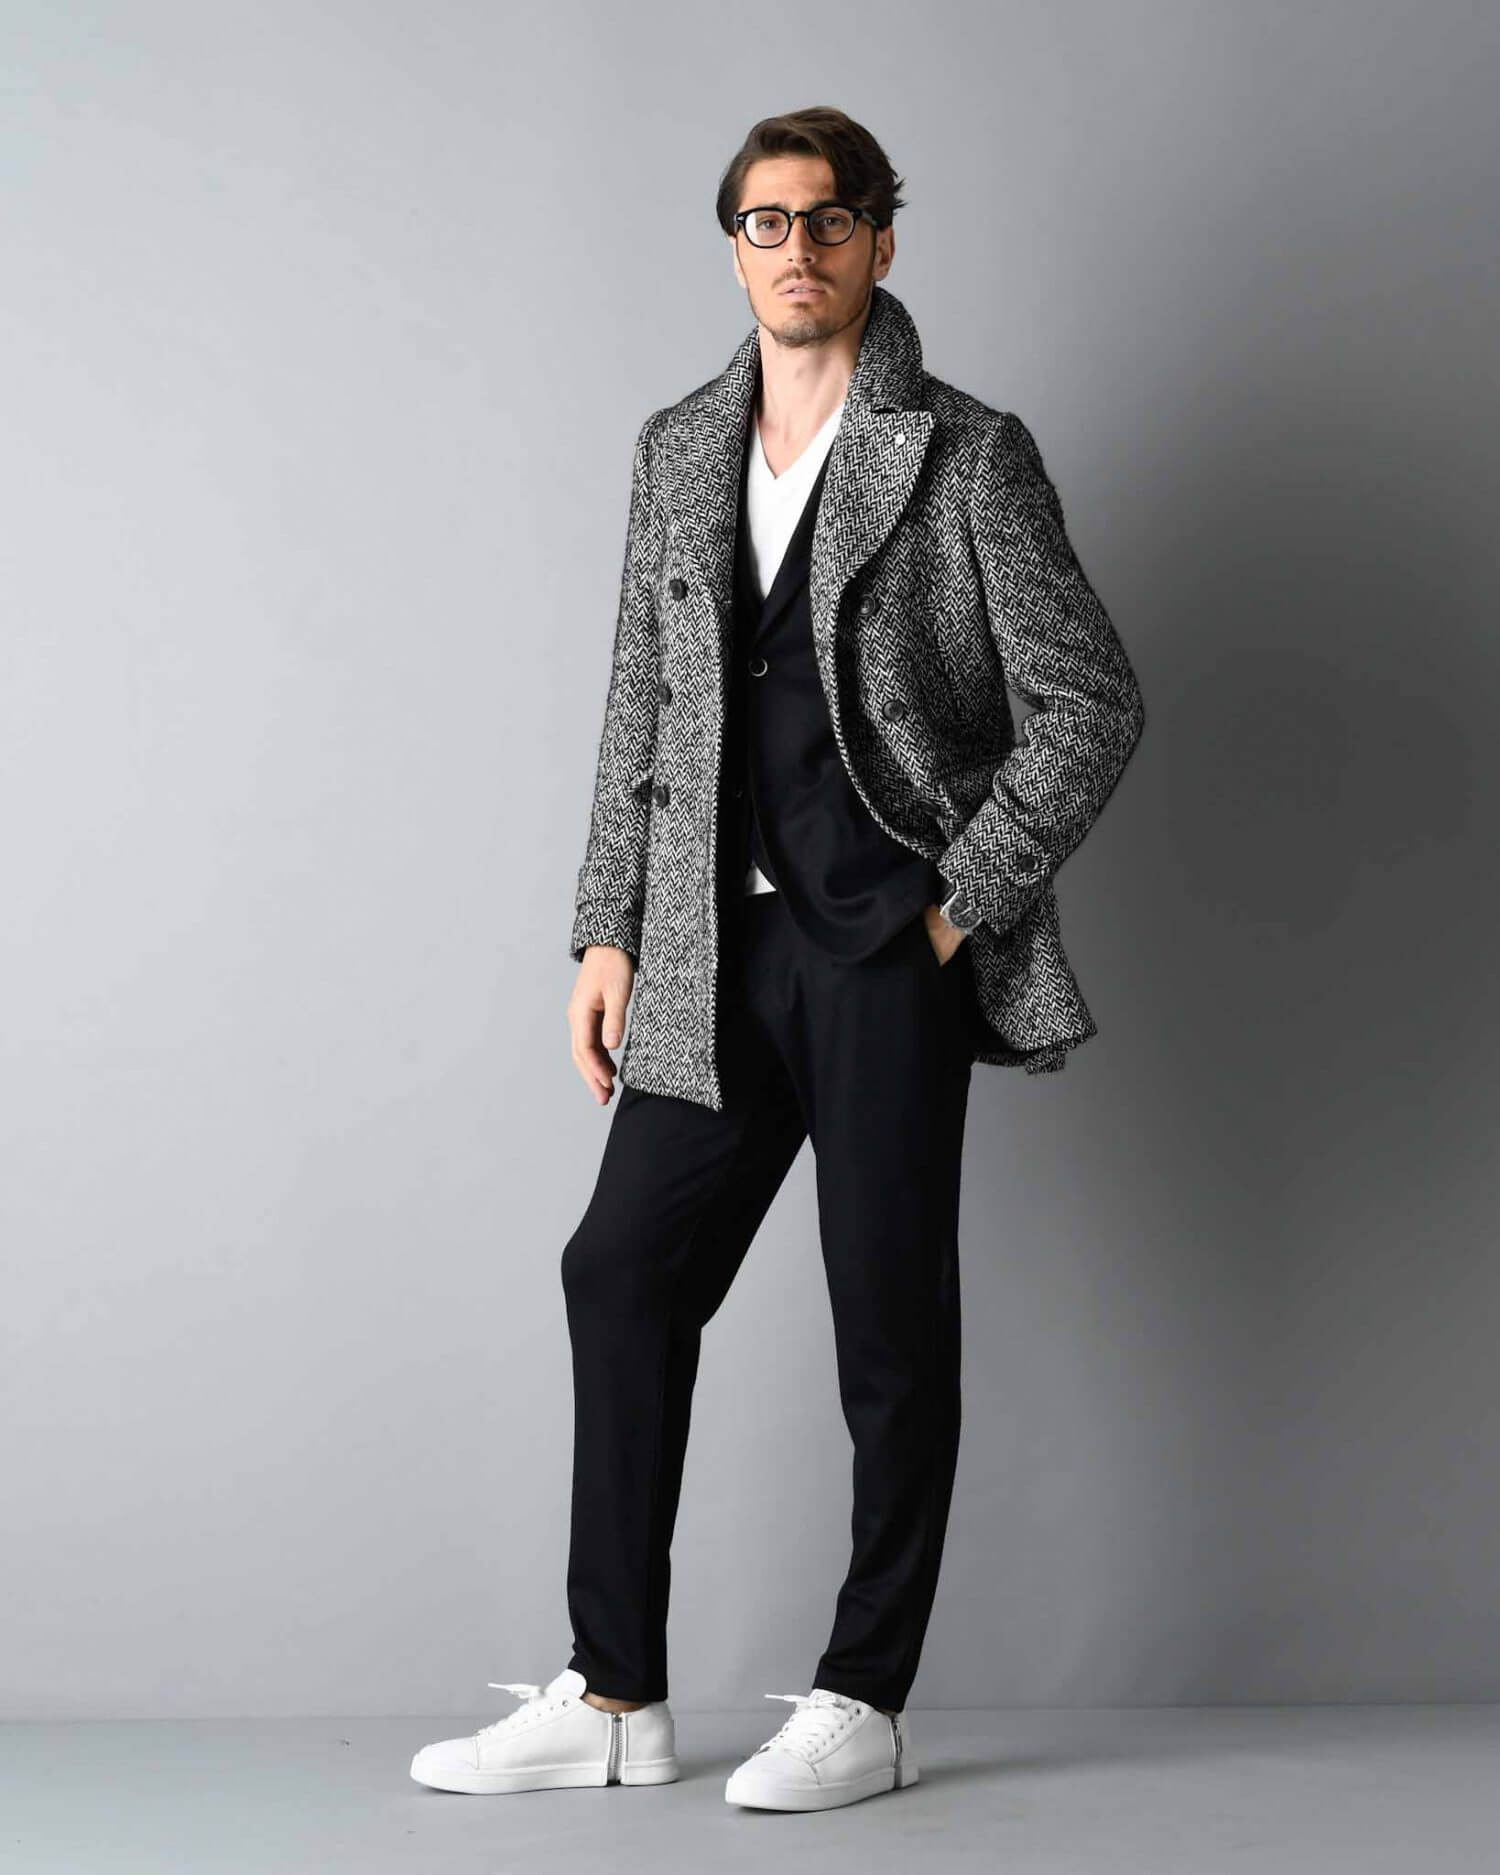 男の冬コートスタイル特集 メンズファッションメディア Apgs Nswapgs Nsw 男前研究所